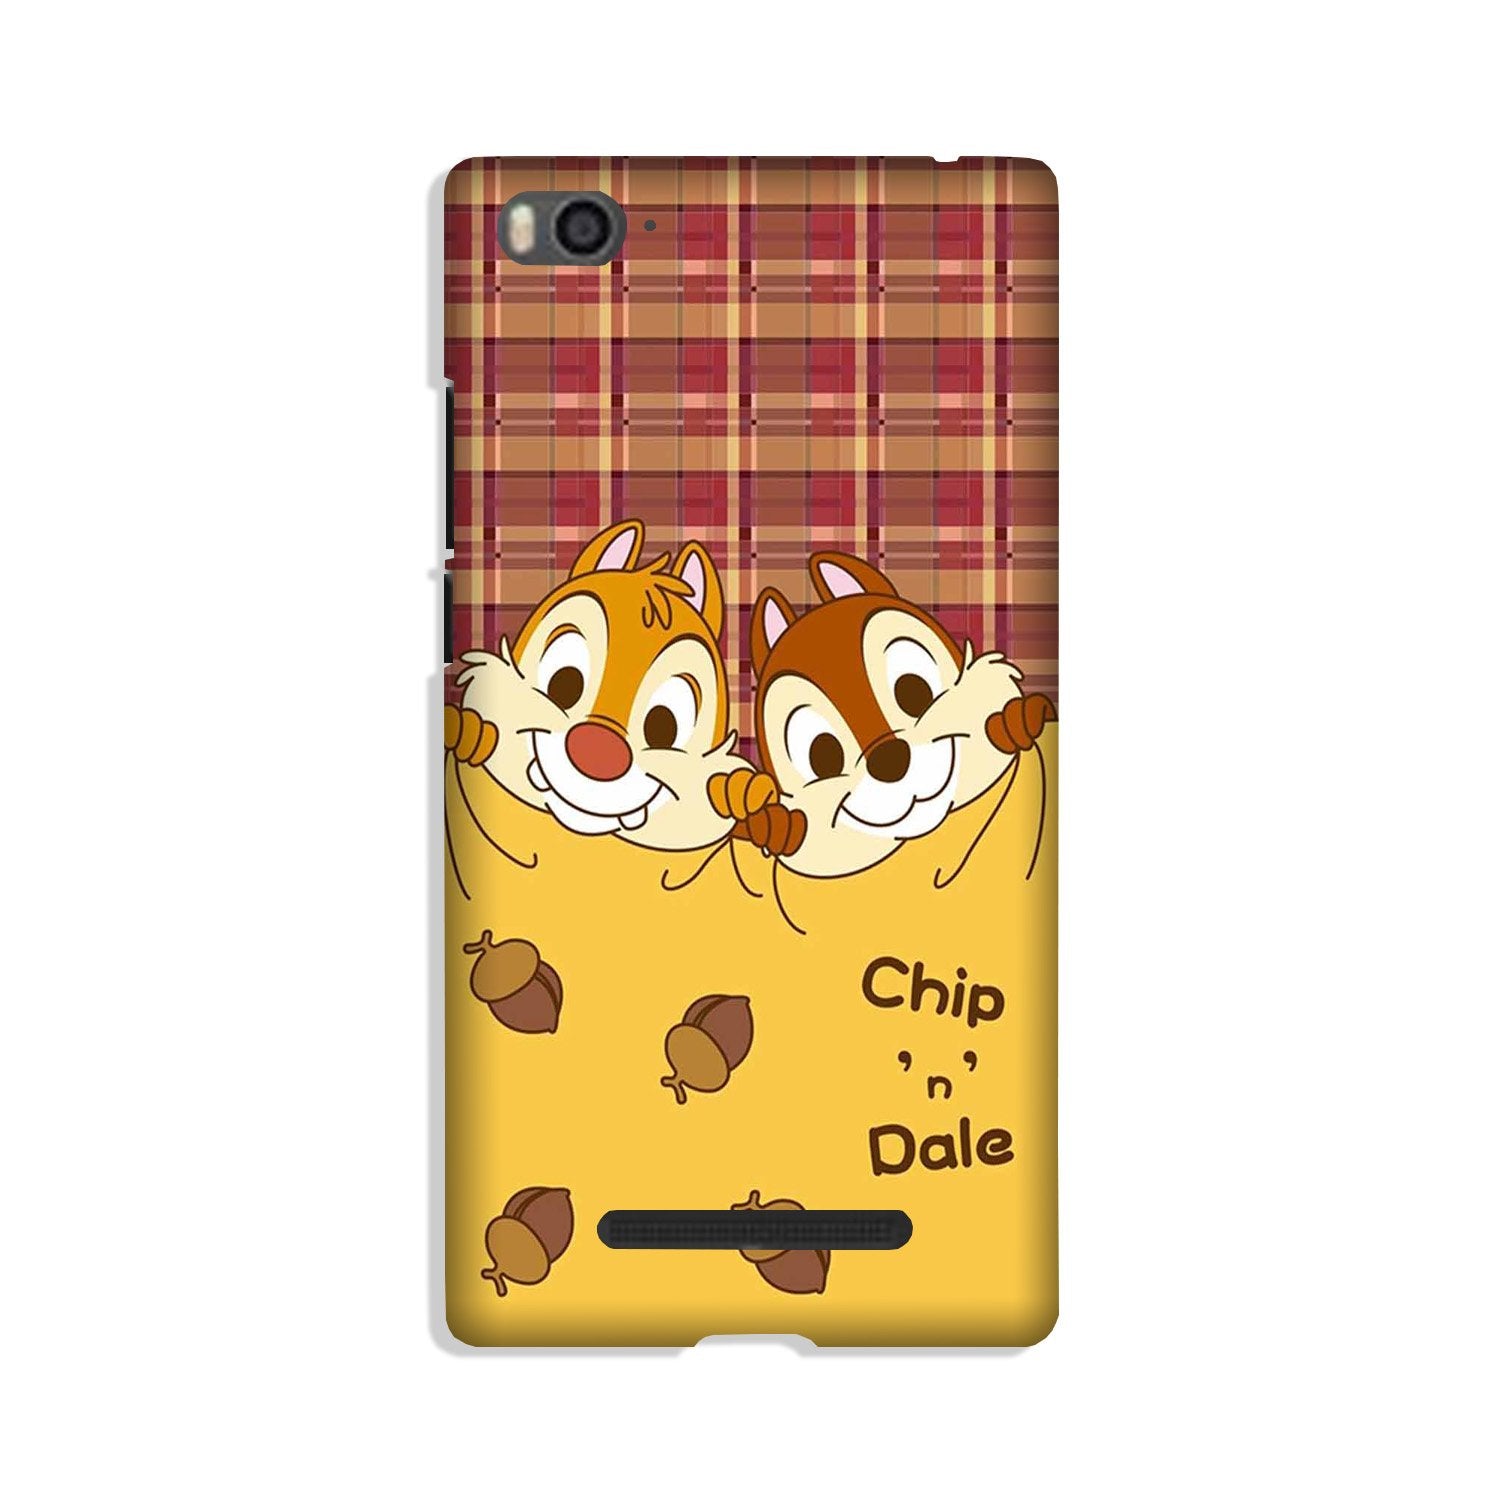 Chip n Dale Mobile Back Case for Xiaomi Mi 4i (Design - 342)